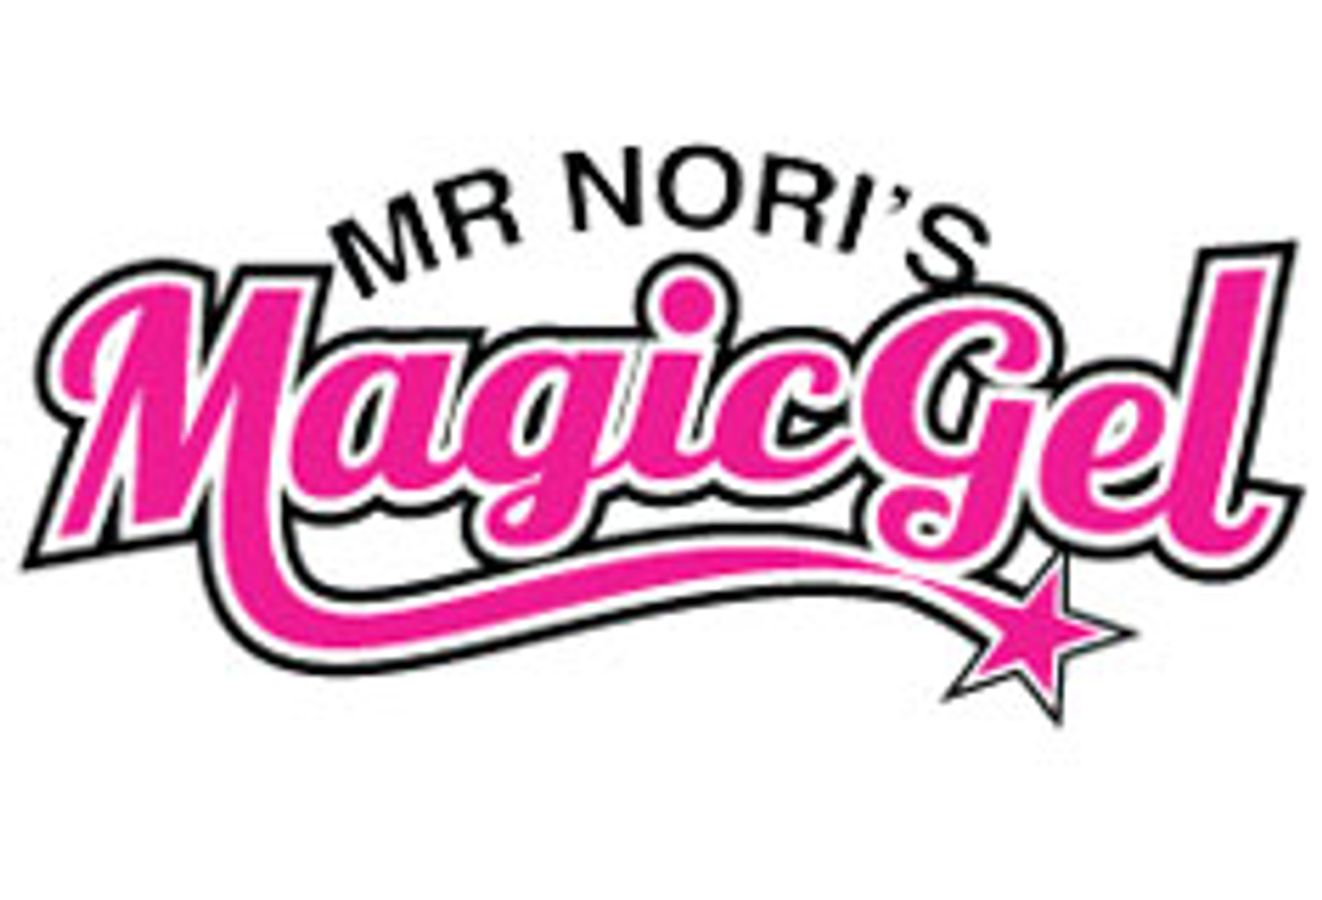 Mr. Nori's Magic Gel